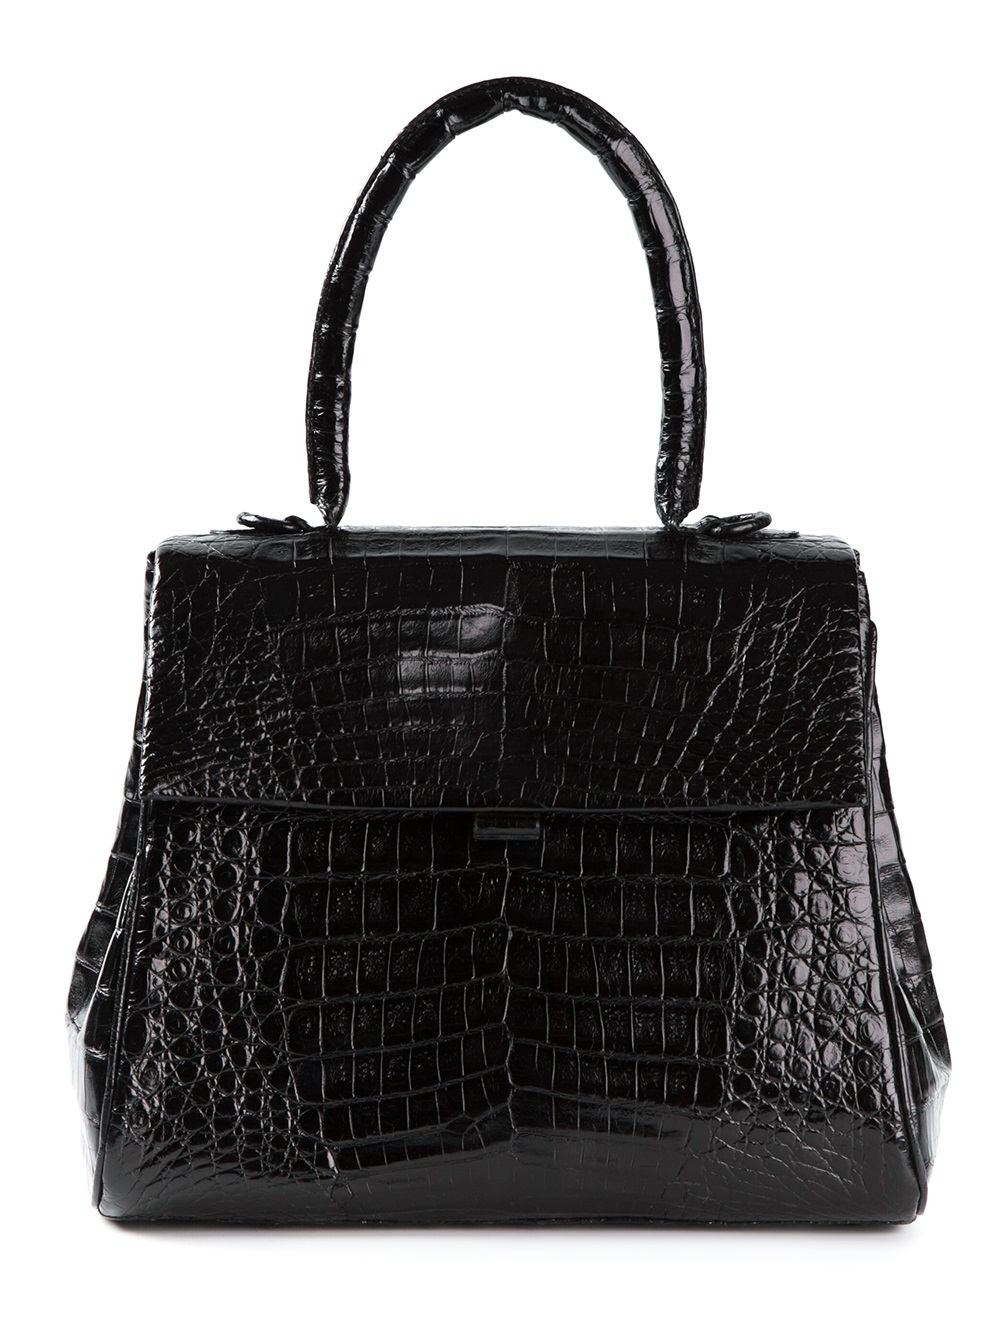 Nancy Gonzalez Crocodile Leather Tote in Black | Lyst